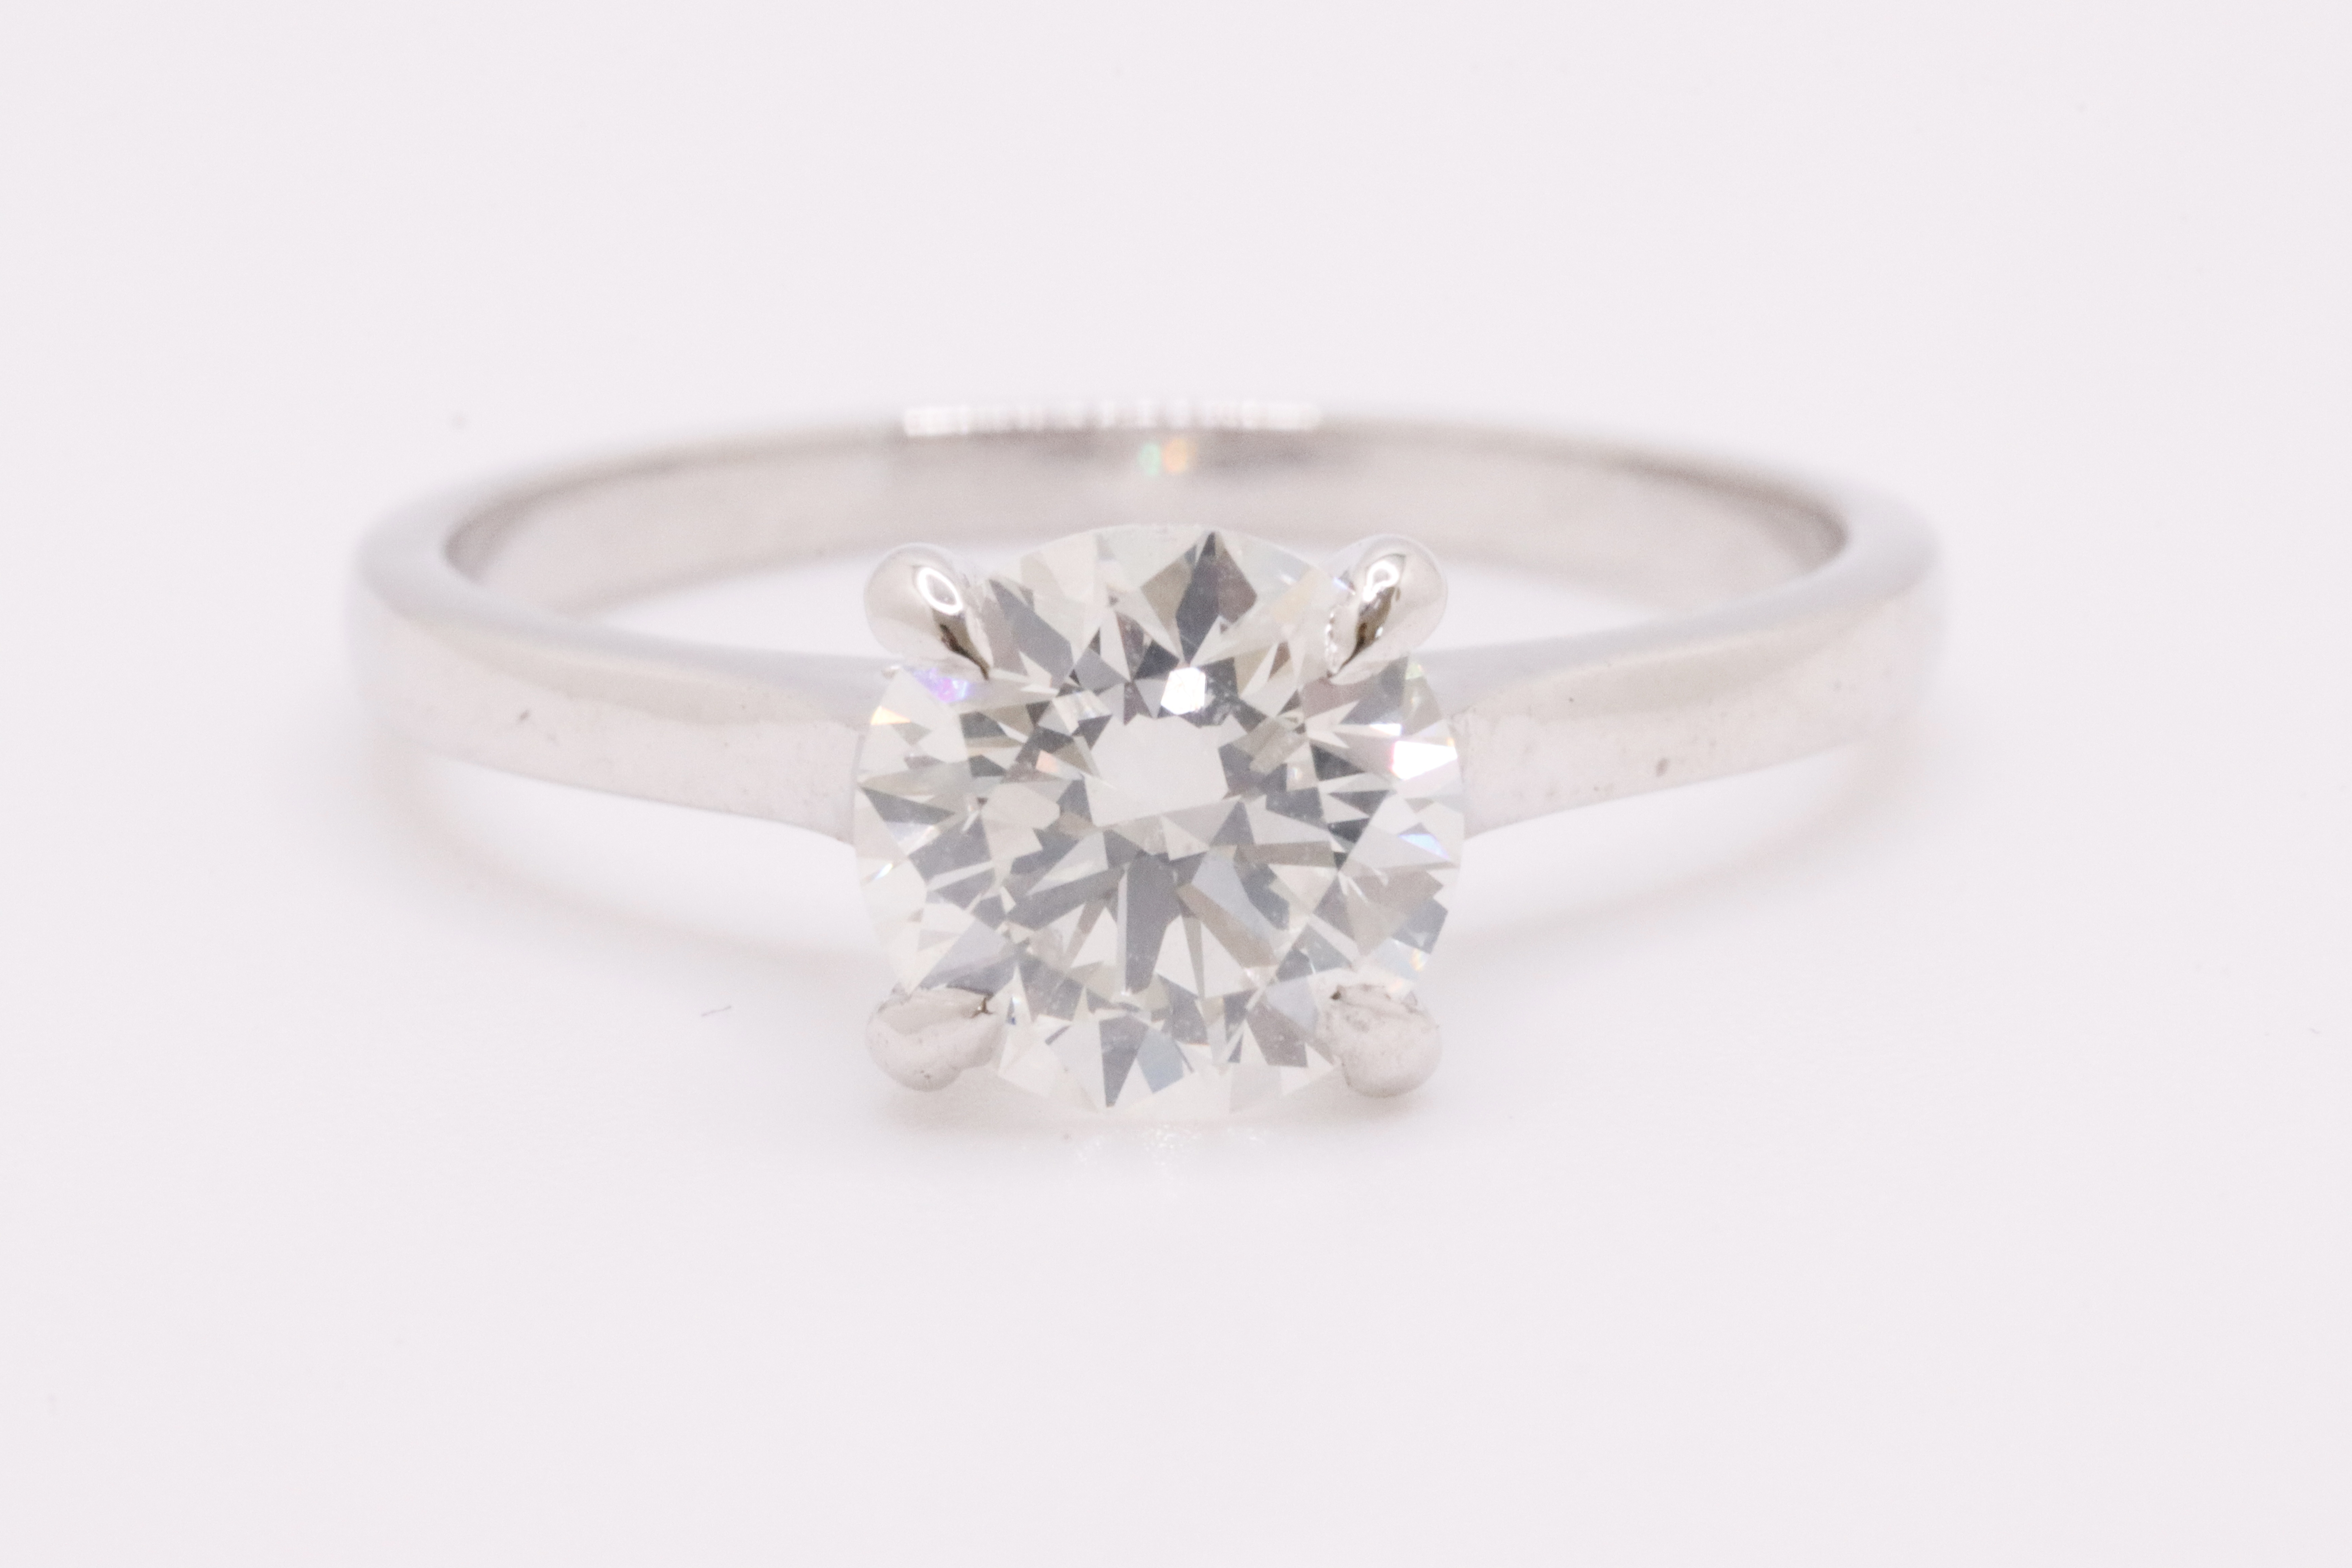 Round Brilliant Cut Natural Diamond Ring 1.09 Carat I Colour SI2 Clarity EX EX EX - GIA - Image 2 of 9